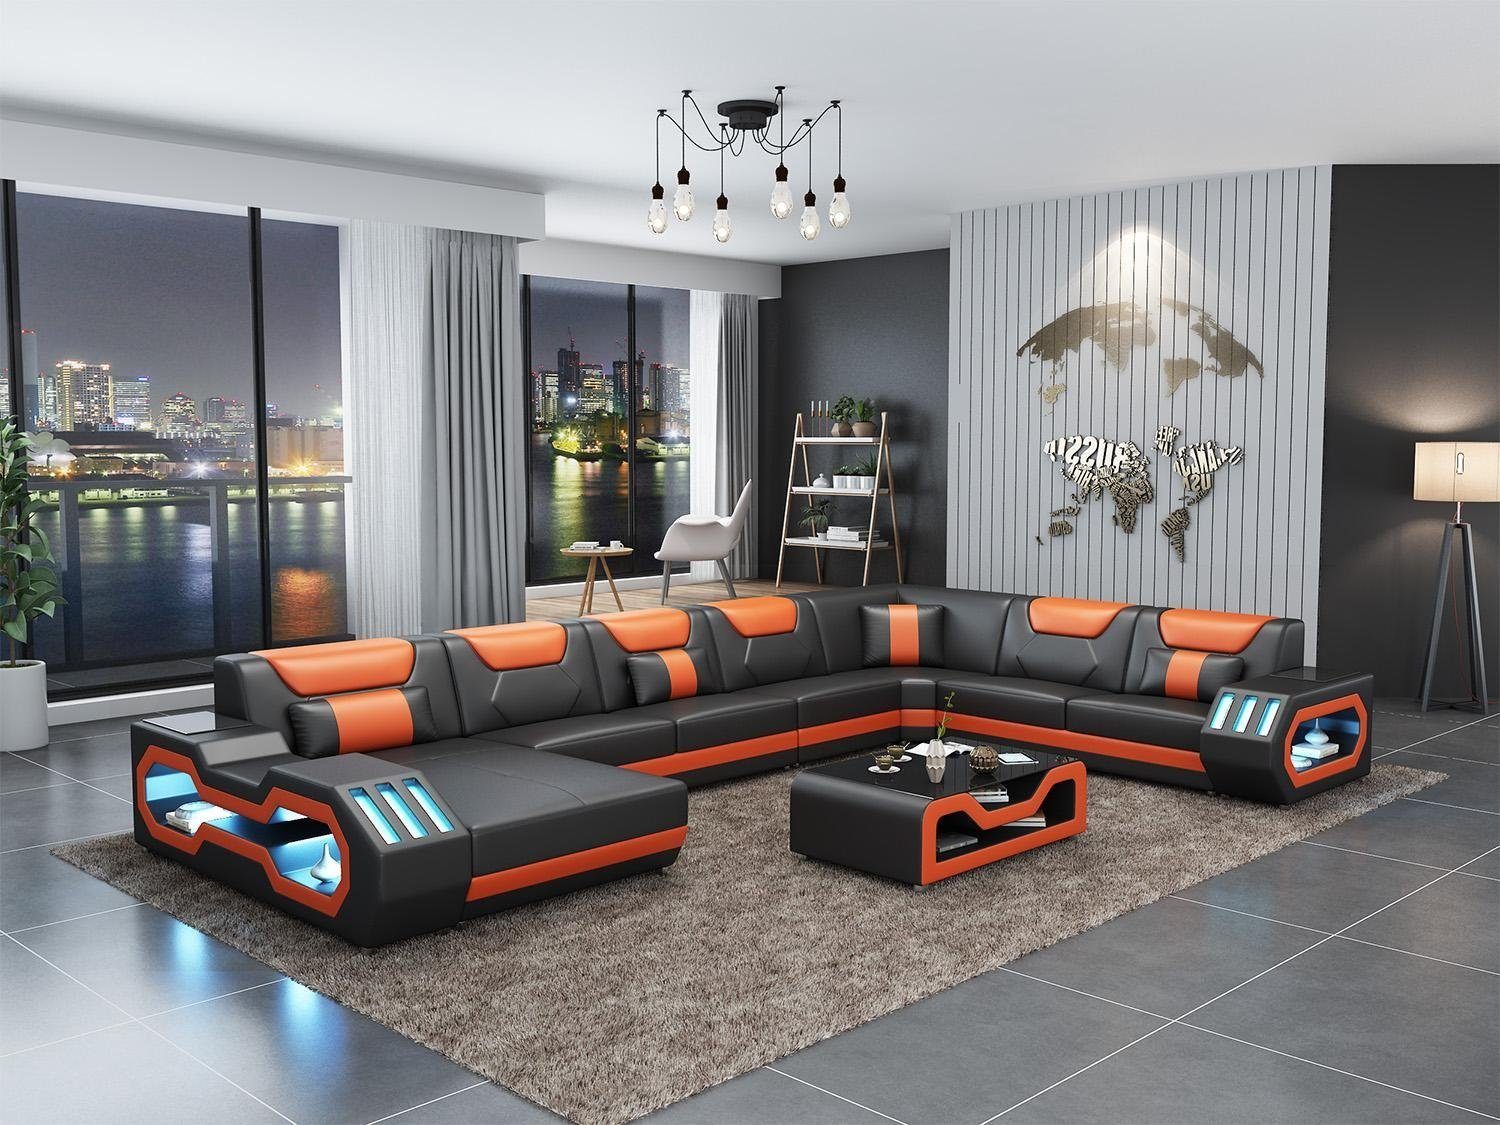 JVmoebel Ecksofa Ledersofa Ecksofa Garnitur Polster U Form Couch Sofa Design, Made in Europe Schwarz/Orange